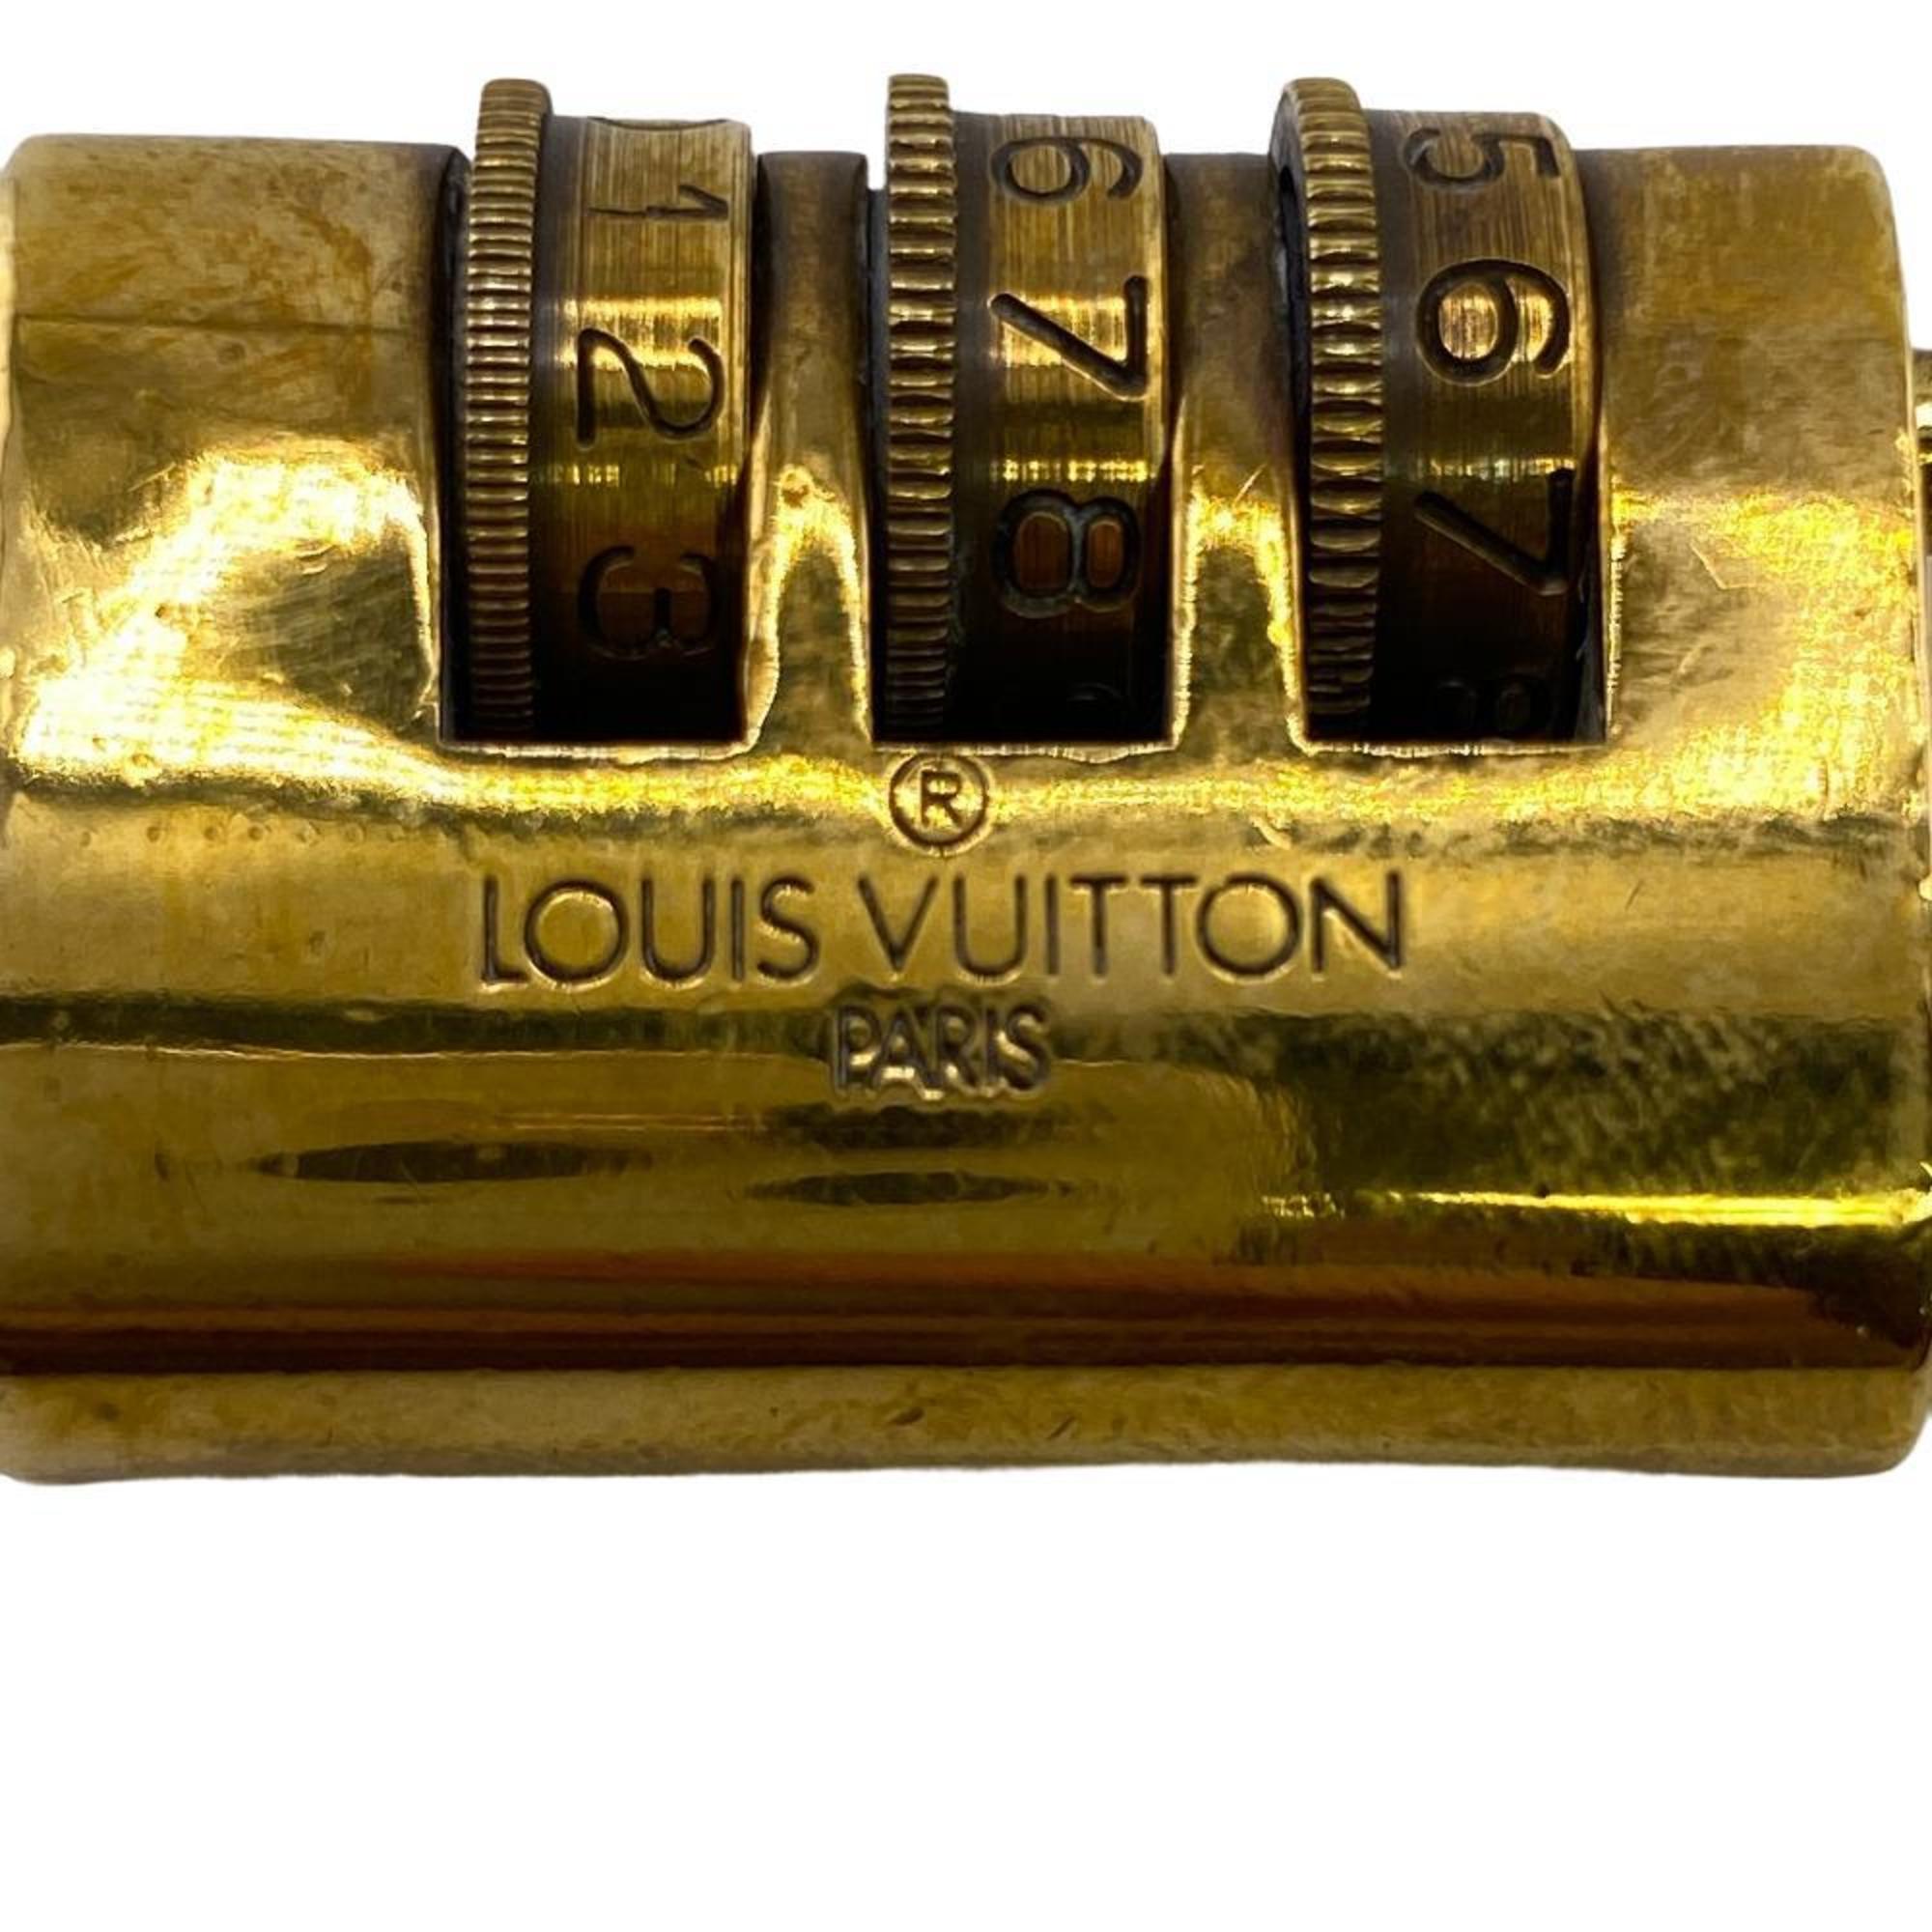 LOUIS VUITTON Dial-type accessory, gold, unisex Z0006268